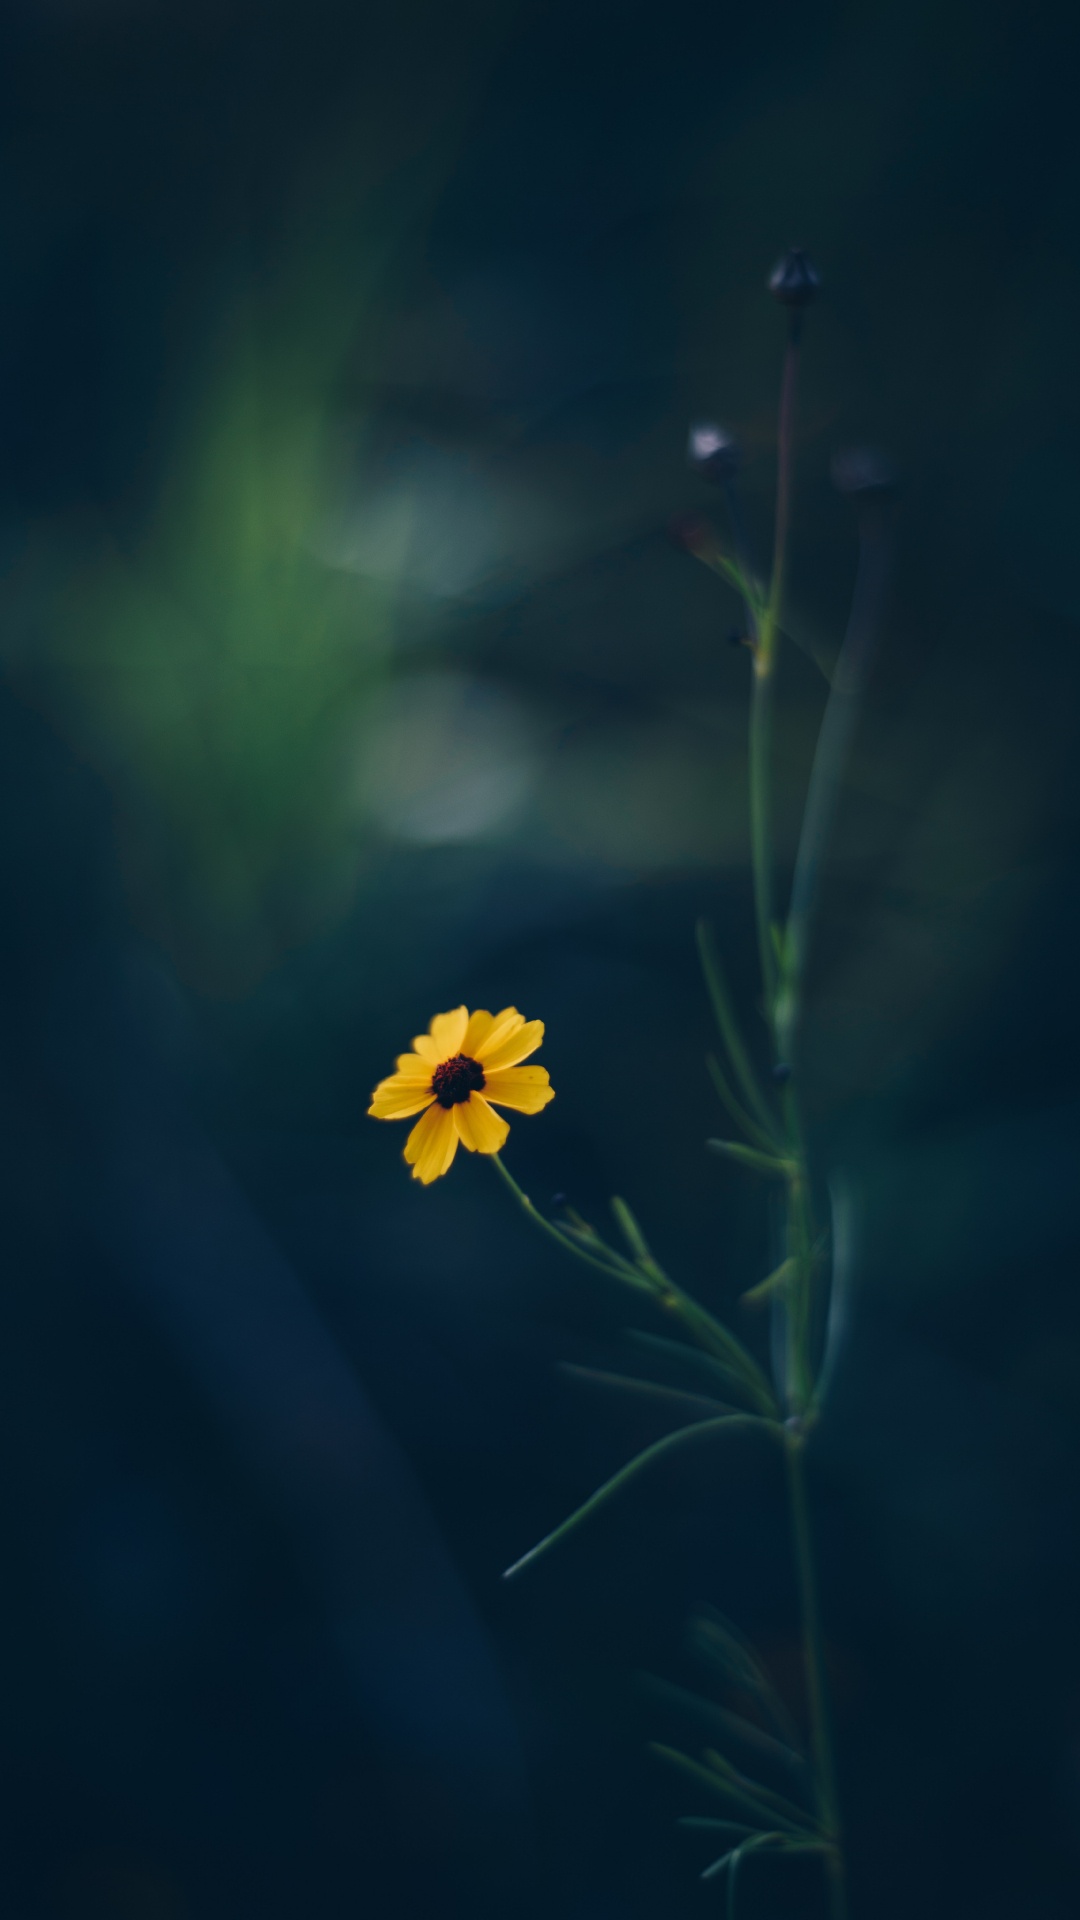 Yellow Flower in Tilt Shift Lens. Wallpaper in 1080x1920 Resolution